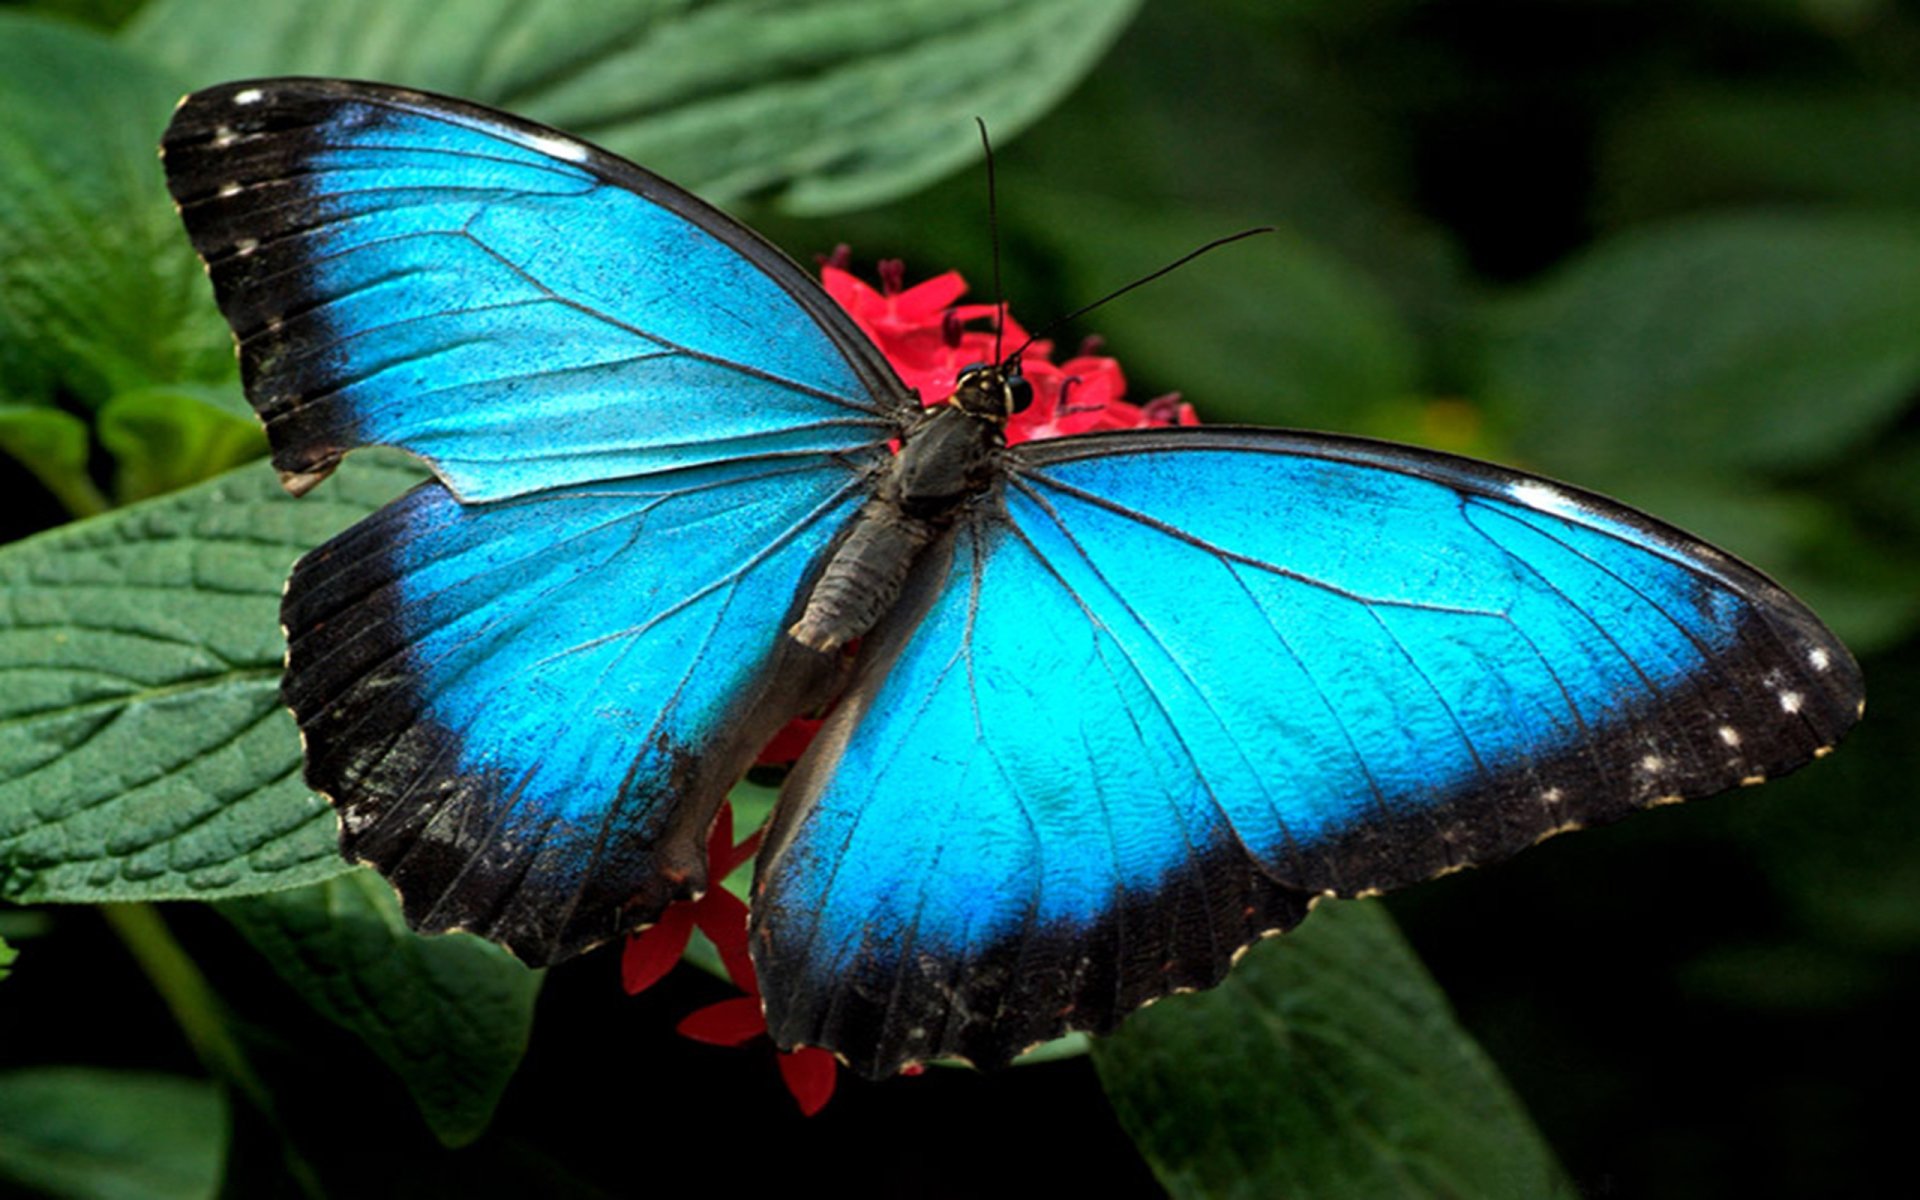 fonds d'écran de mariposas,papillons et papillons,papillon,insecte,invertébré,bleu